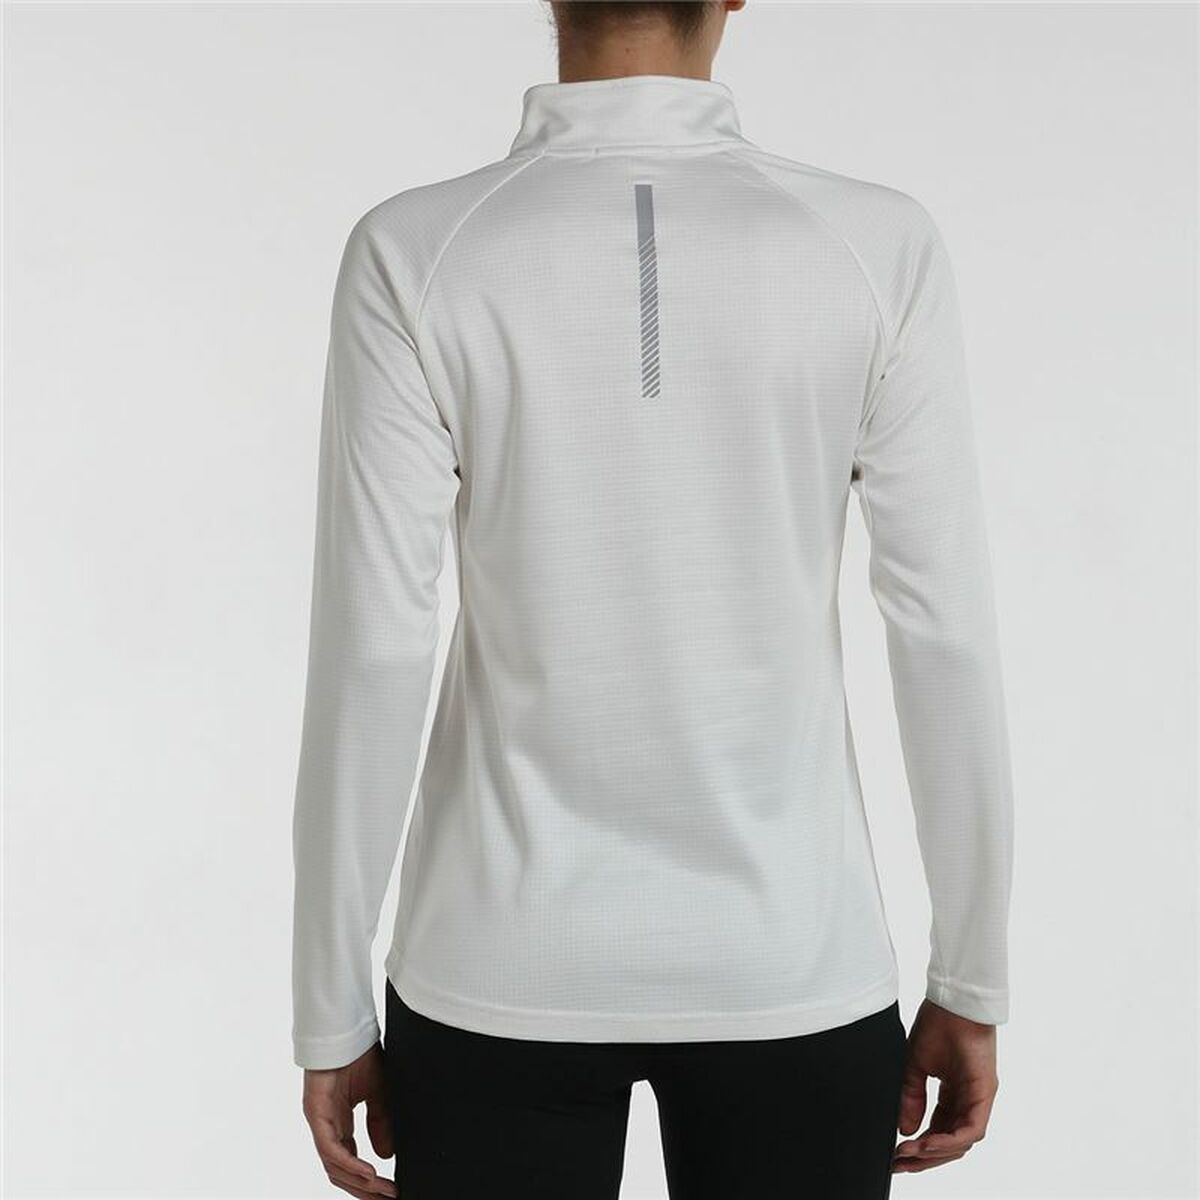 Women’s Long Sleeve T-Shirt +8000 Pagoeta White